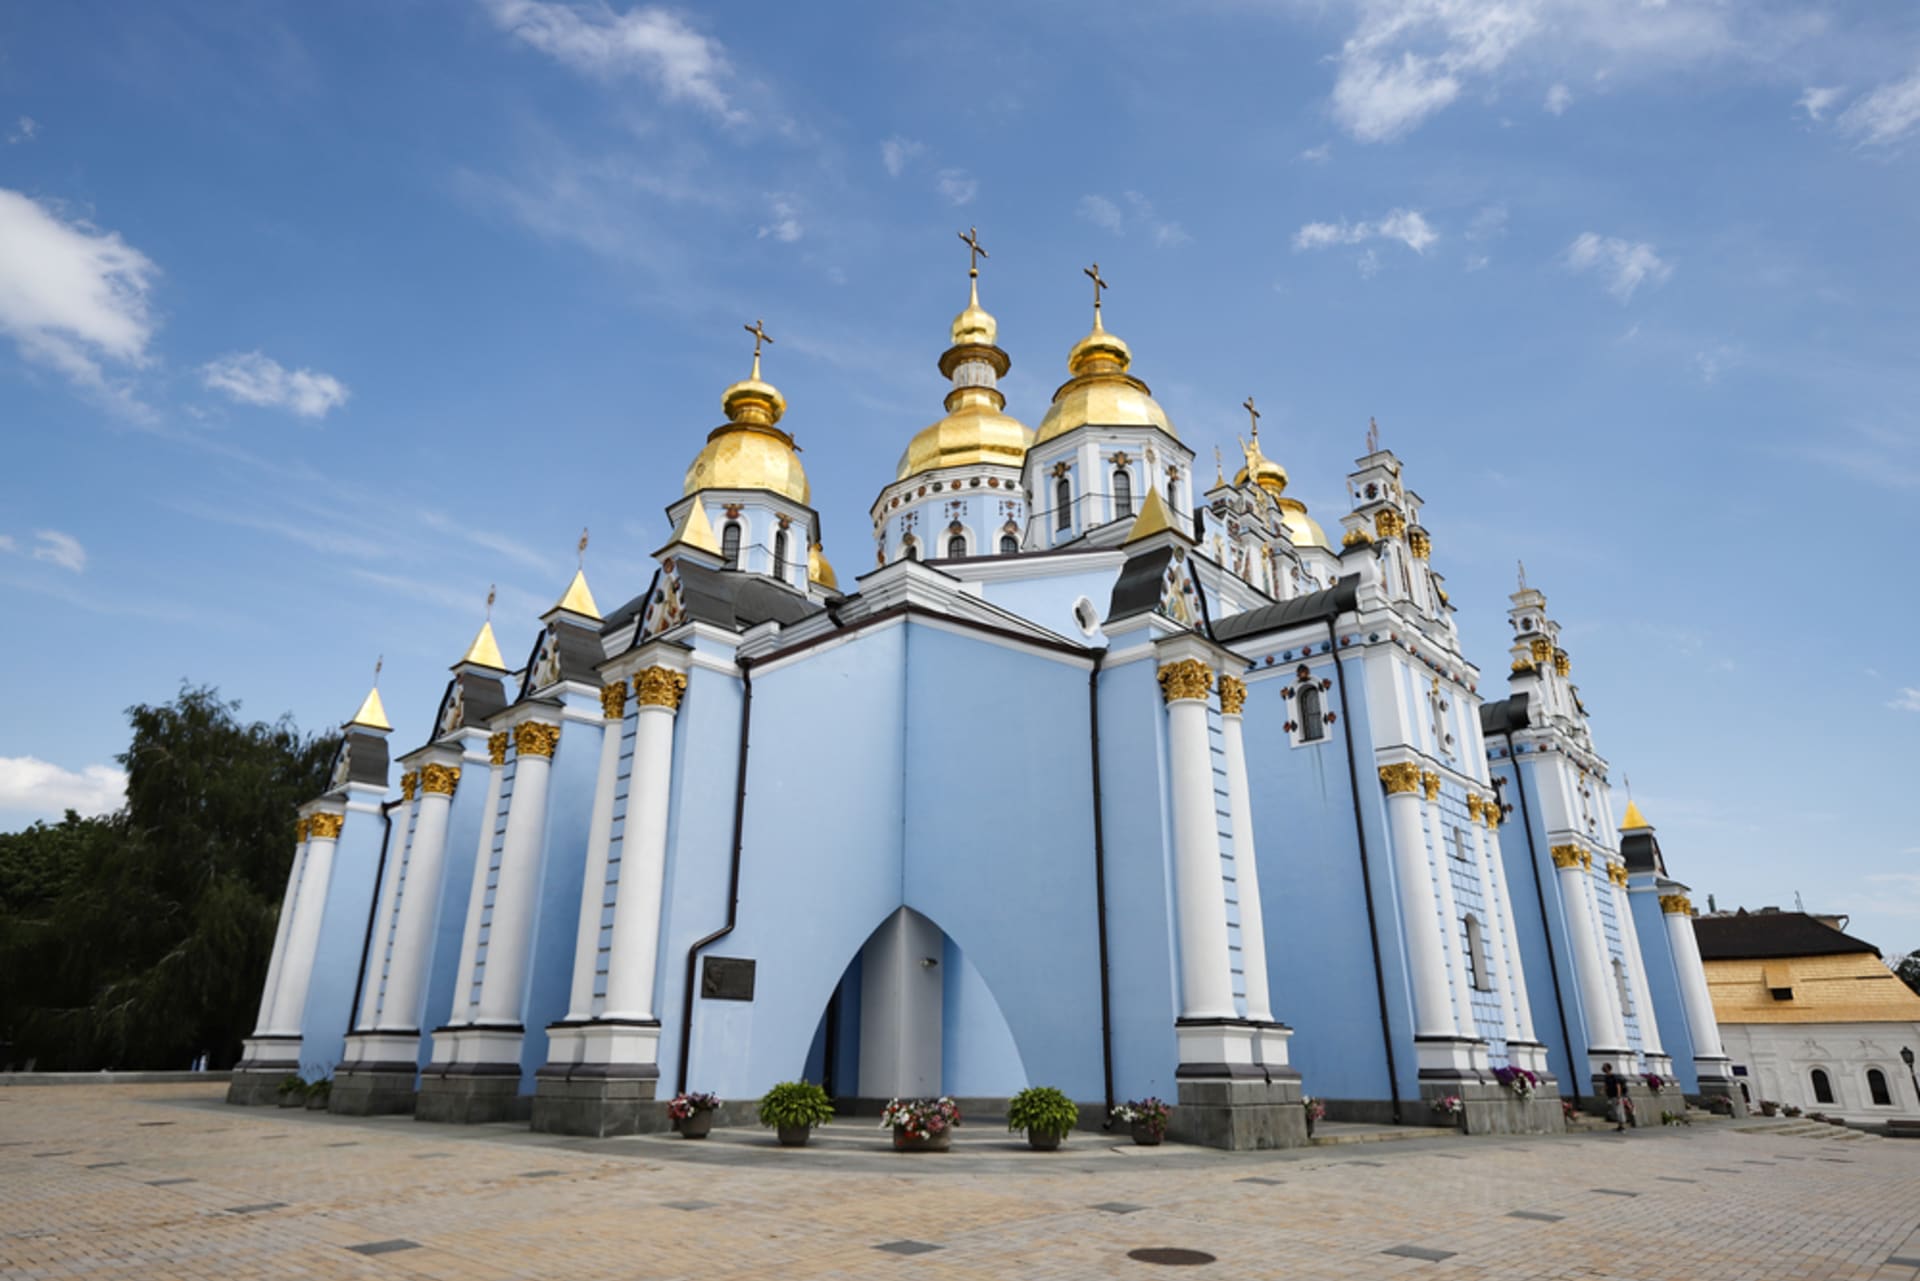 Chrám svatého Michala v Kyjevě je pravoslavný chrám Pravoslavné církve Ukrajiny, který se nachází v hlavním městě Ukrajiny. Původní chrám byl postaven na počátku 12. století, zásadními renovacemi prošel v 17. a 18. století. V roce 1936 byl na příkaz sovětské komunistické moci zničen.